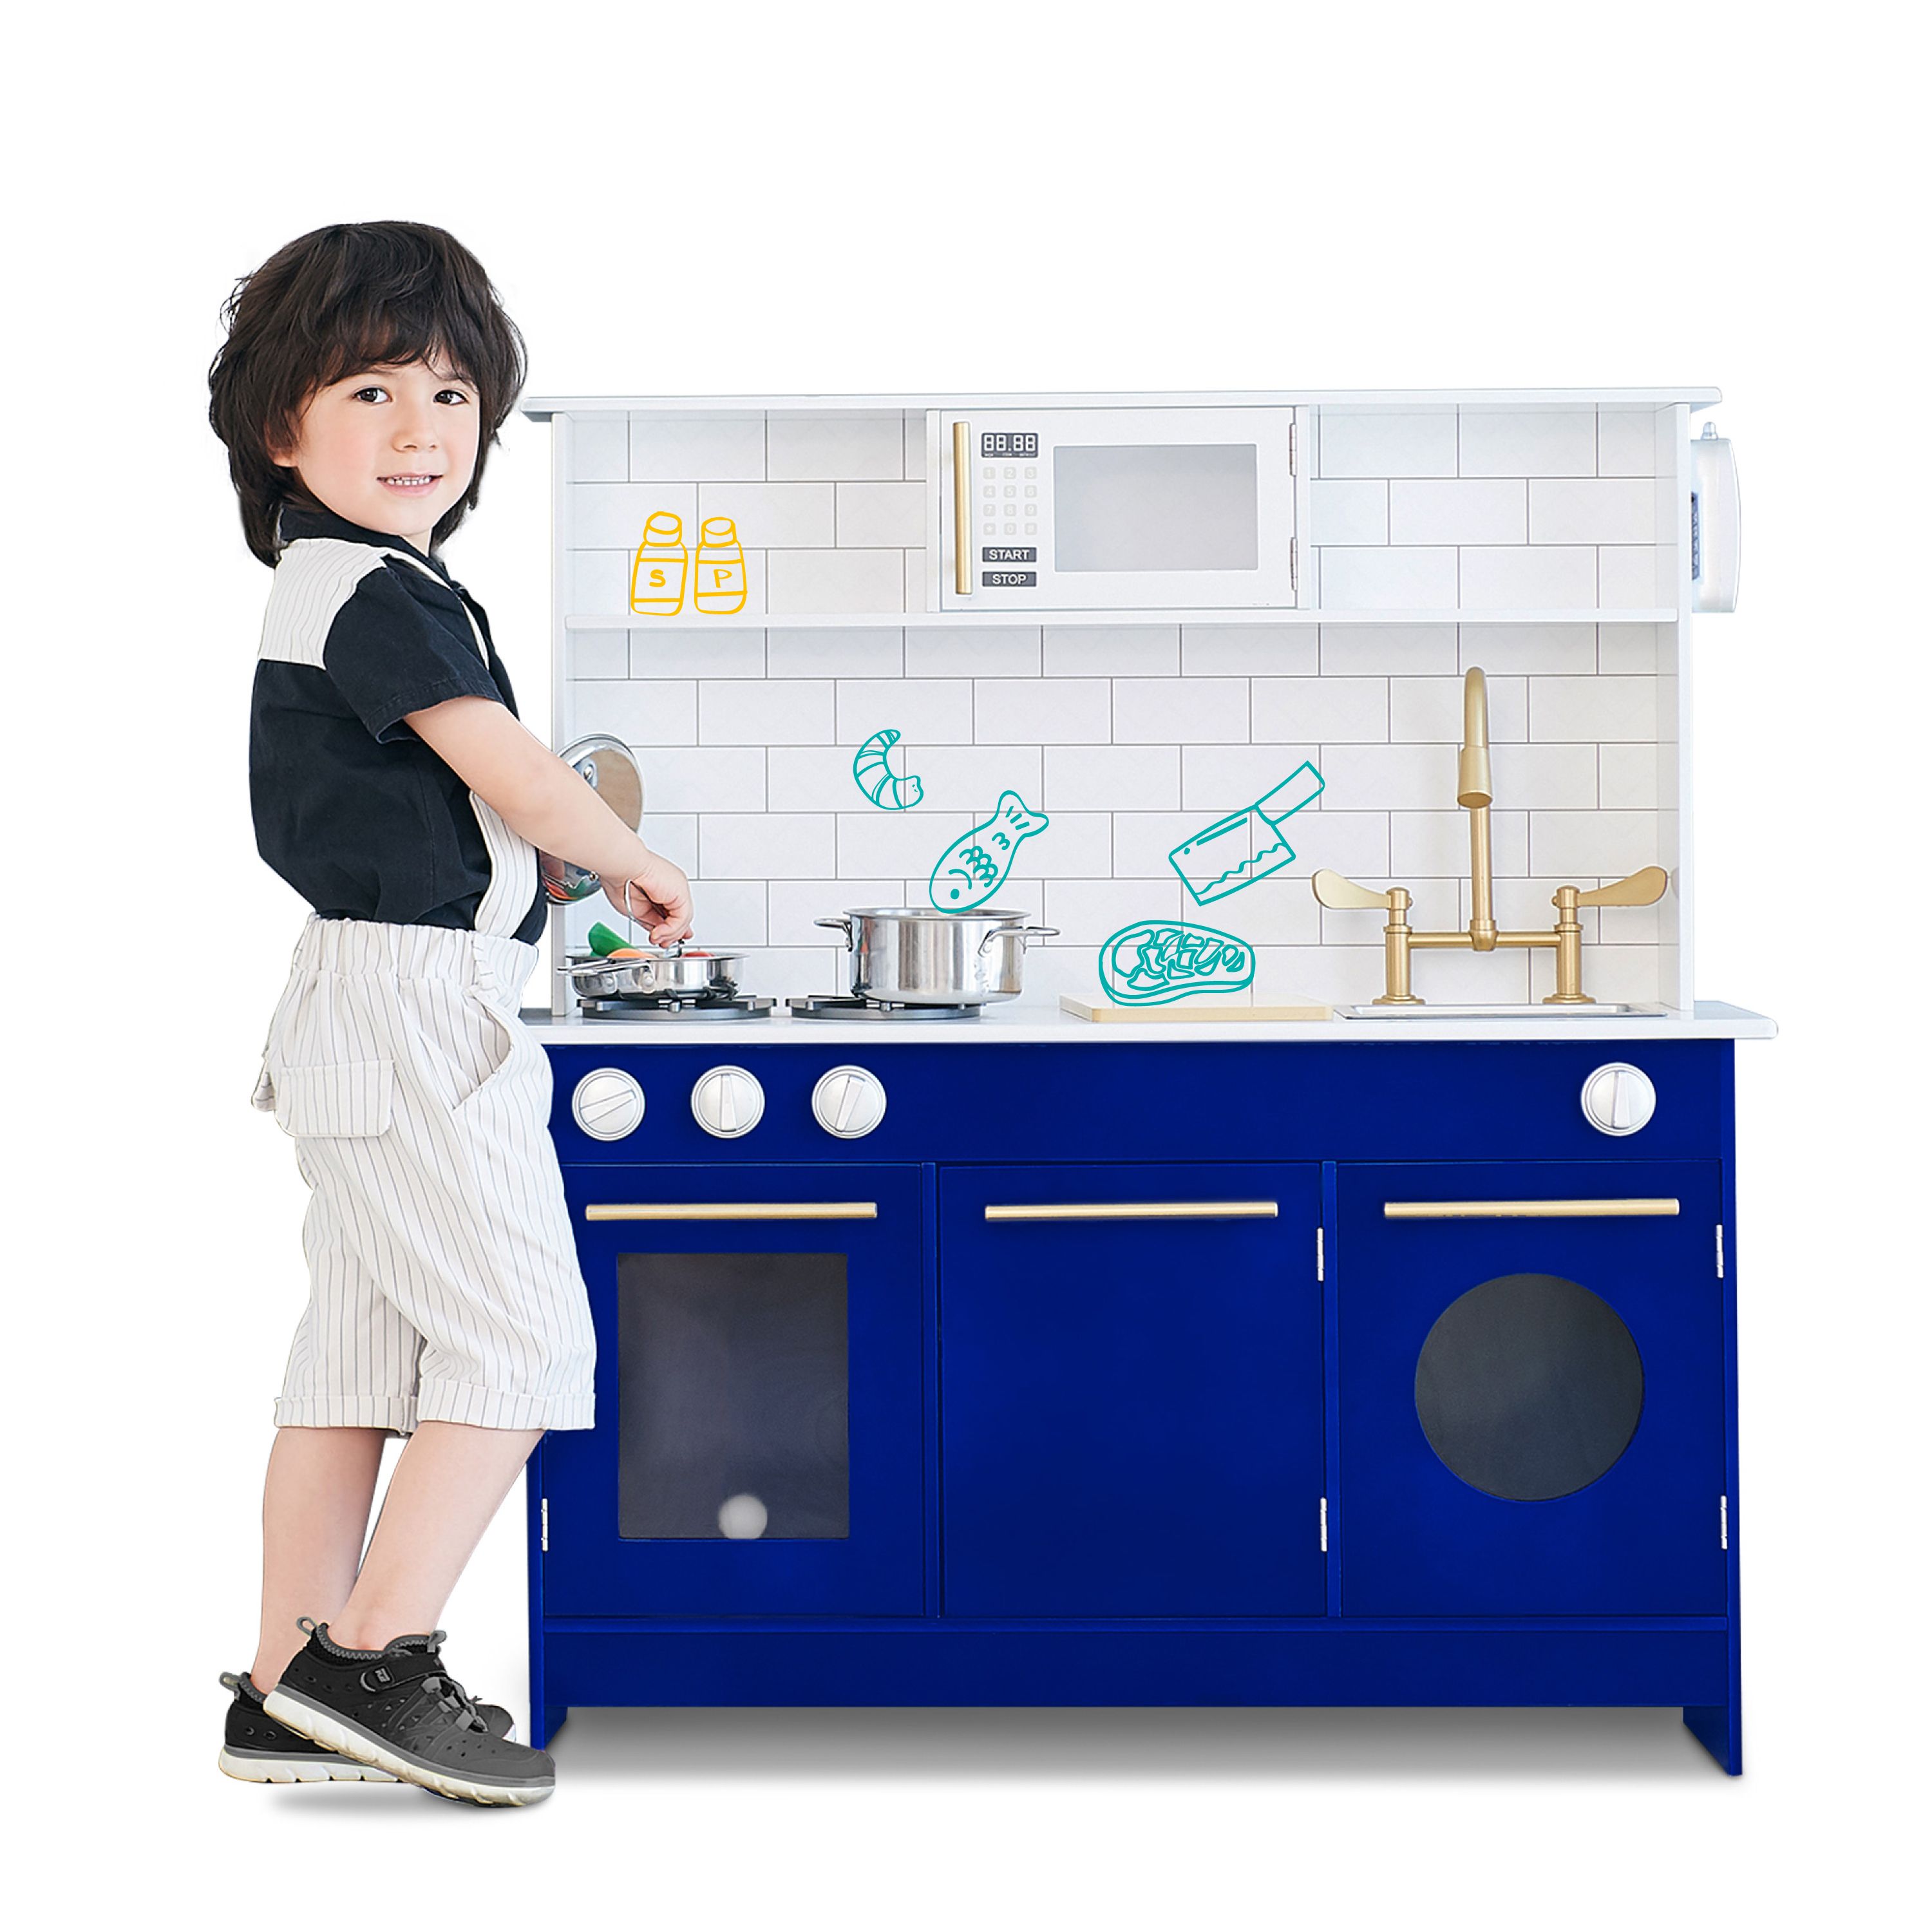 Teamson Kids Little Chef Berlin Modern Kids Kitchen Playset with 6 Accessories, White/Blue - Walm... | Walmart (US)